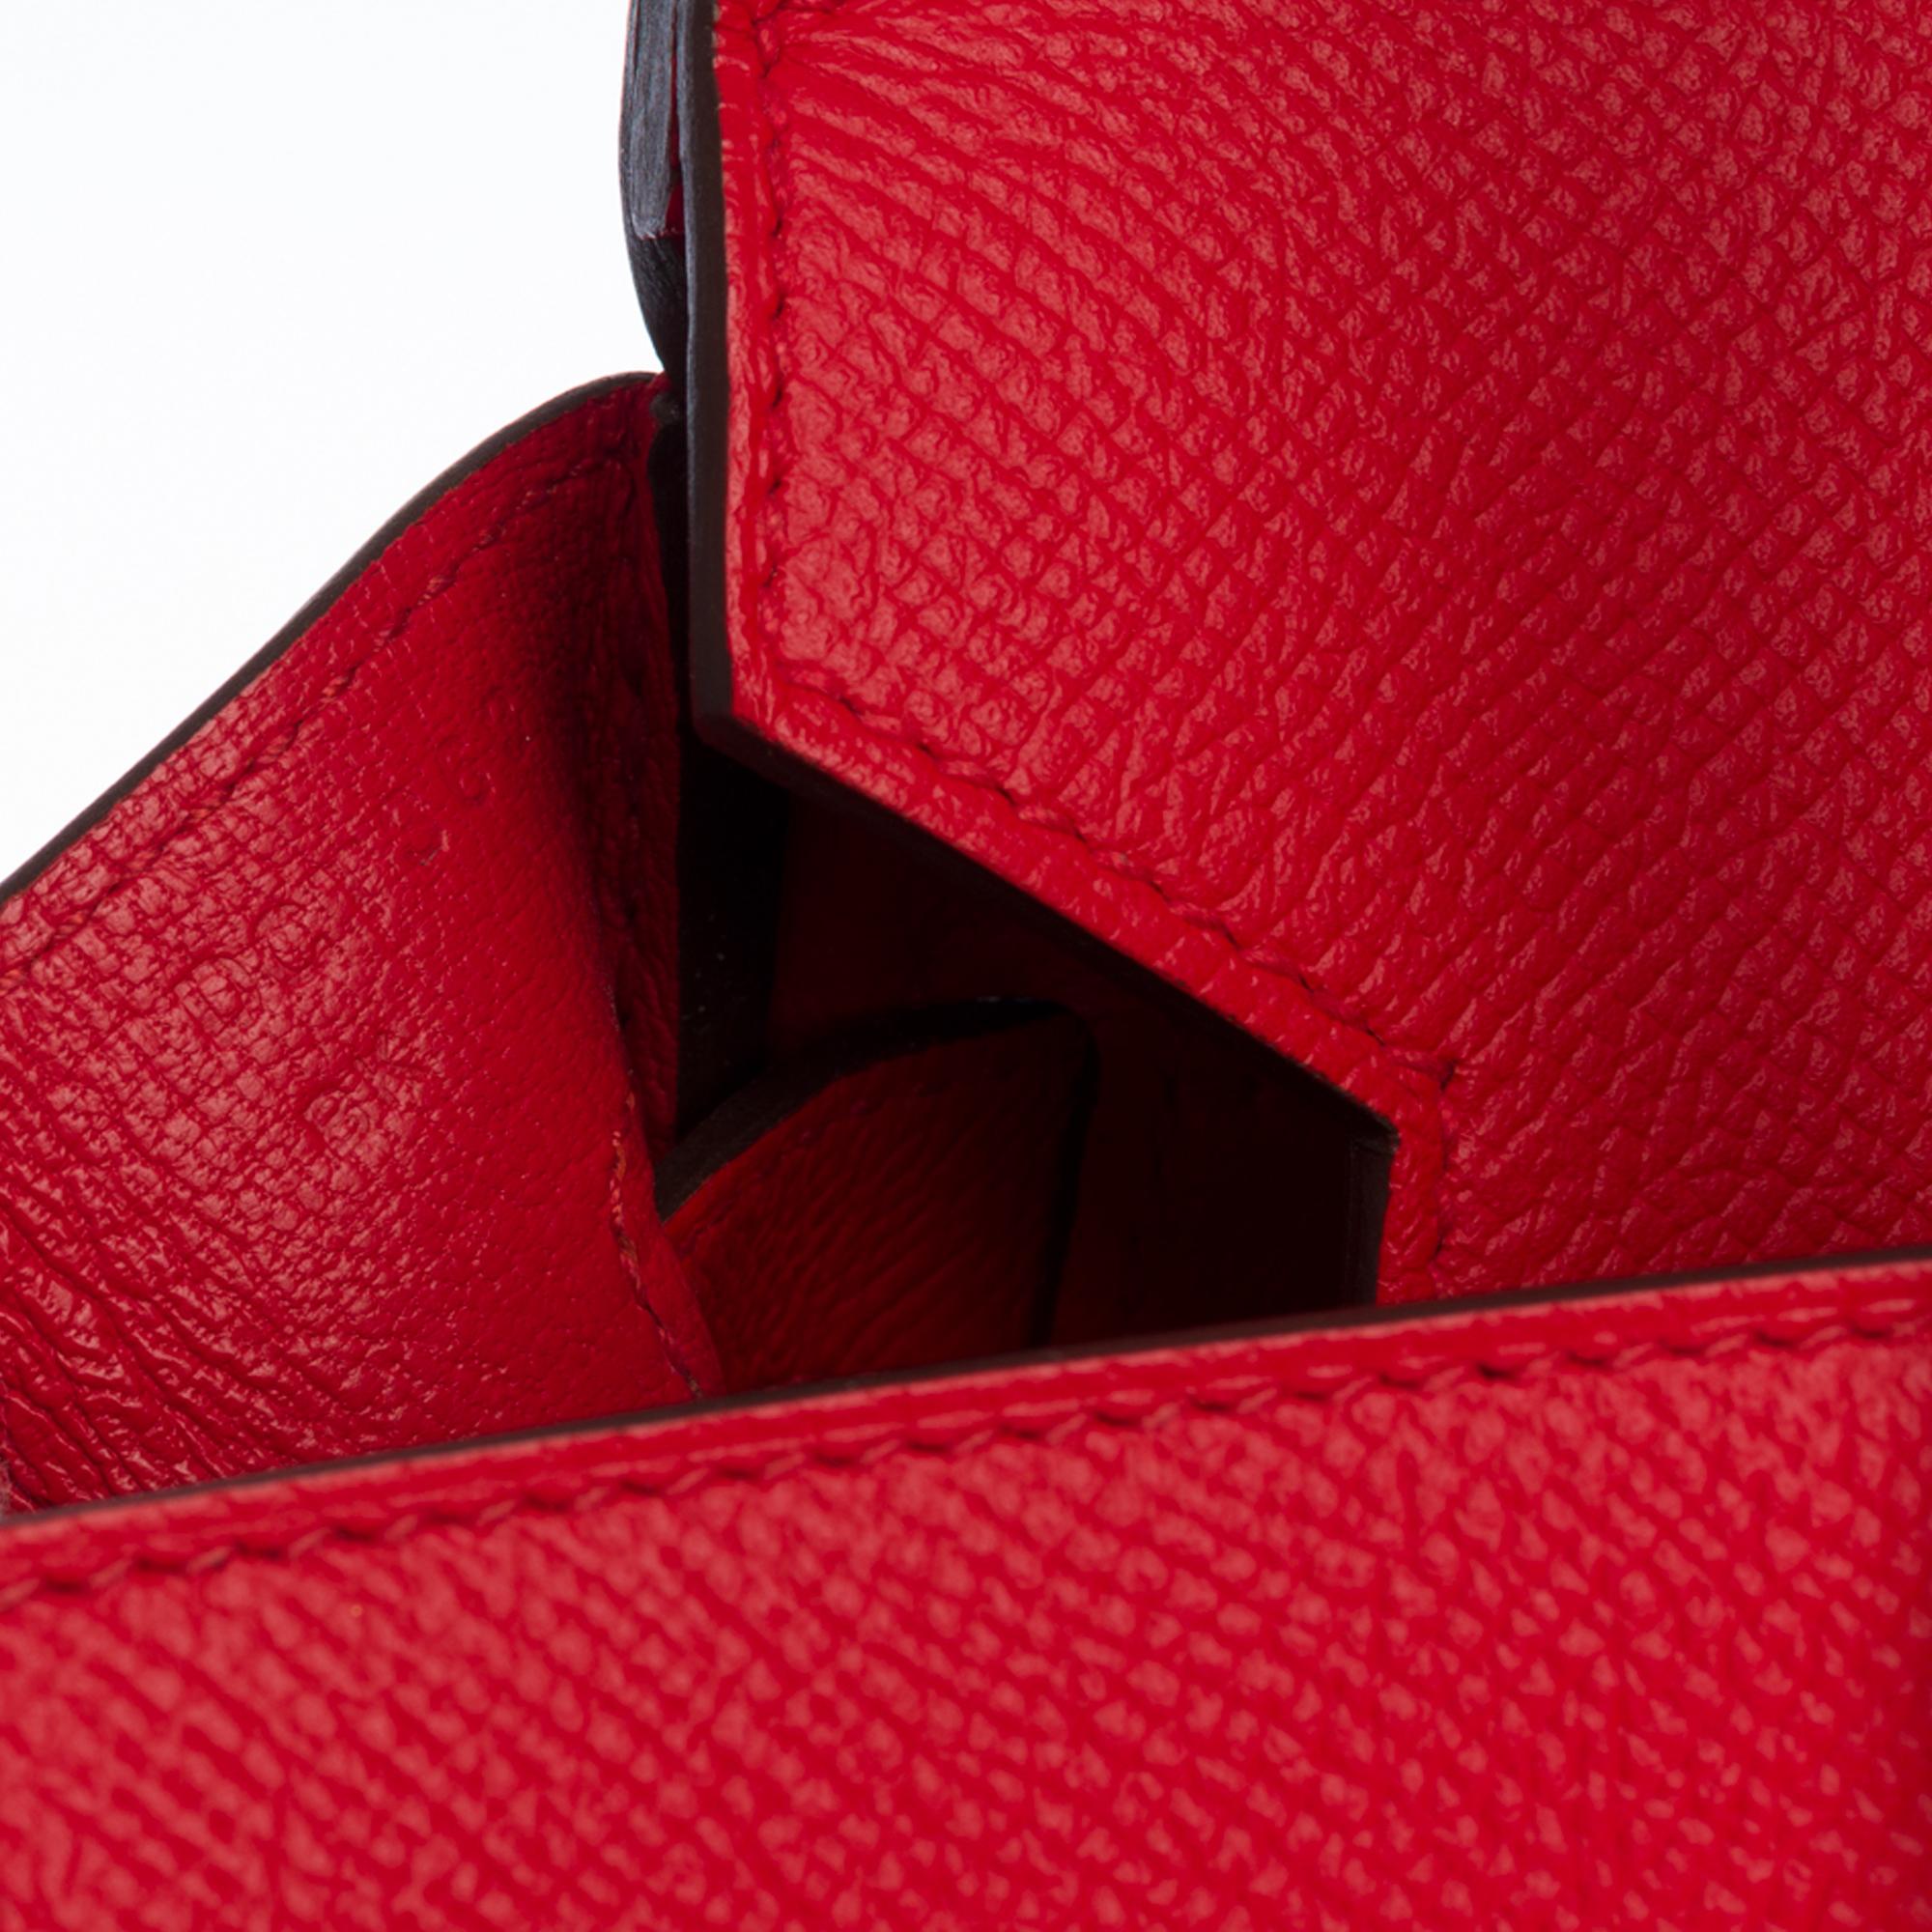 Women's Stunning Hermès Birkin 30 handbag in Rouge de Coeur Epsom leather, SHW